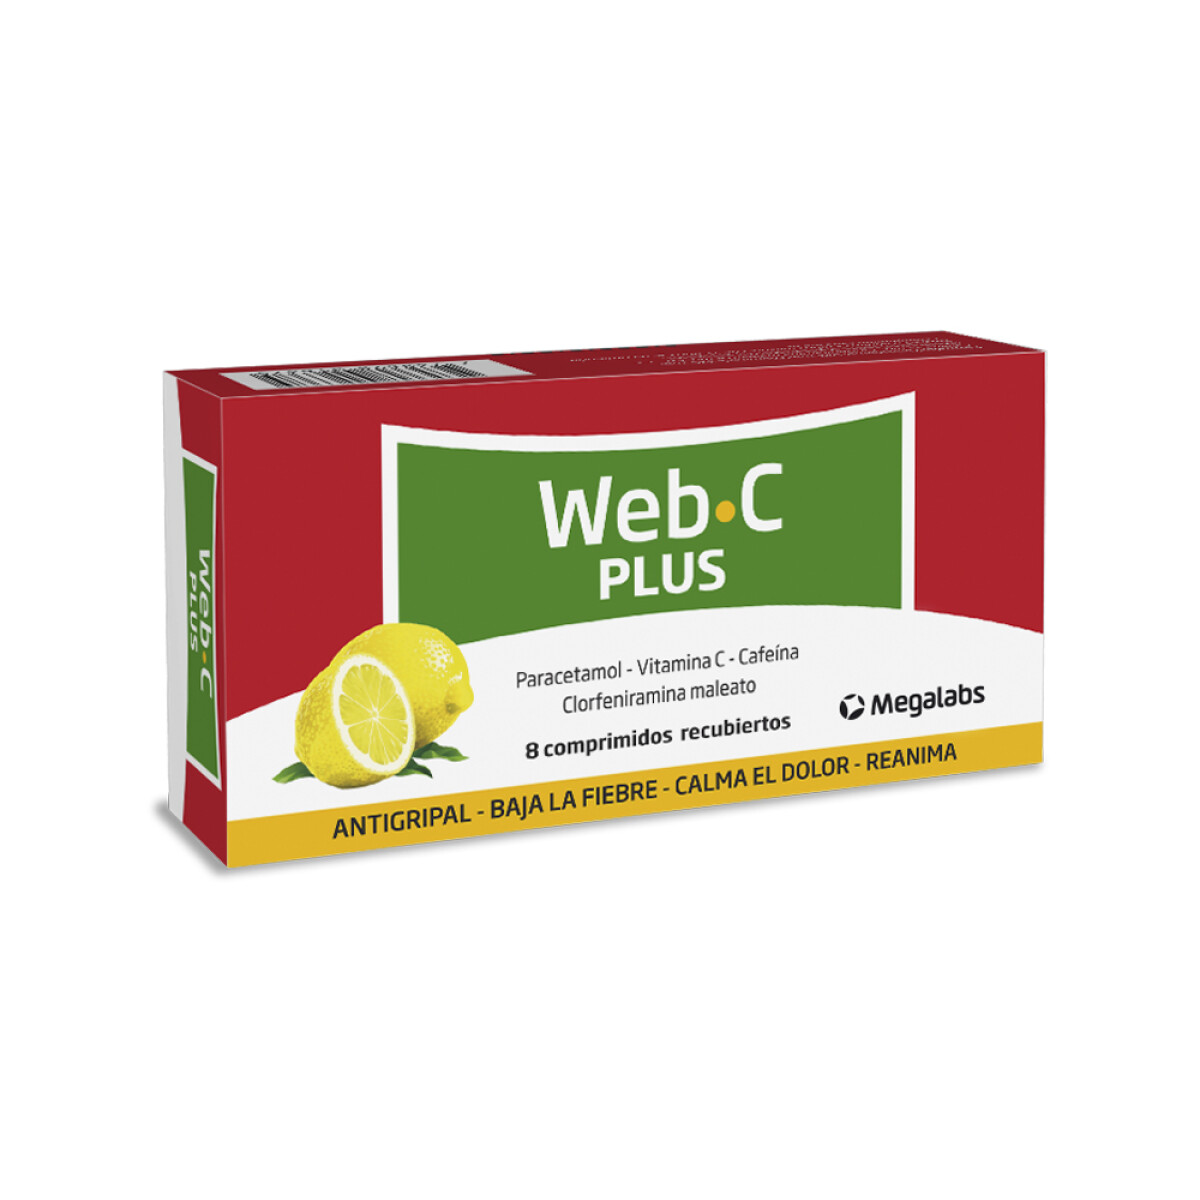 WEB C PLUS 8 COMPrimidos RECUB 